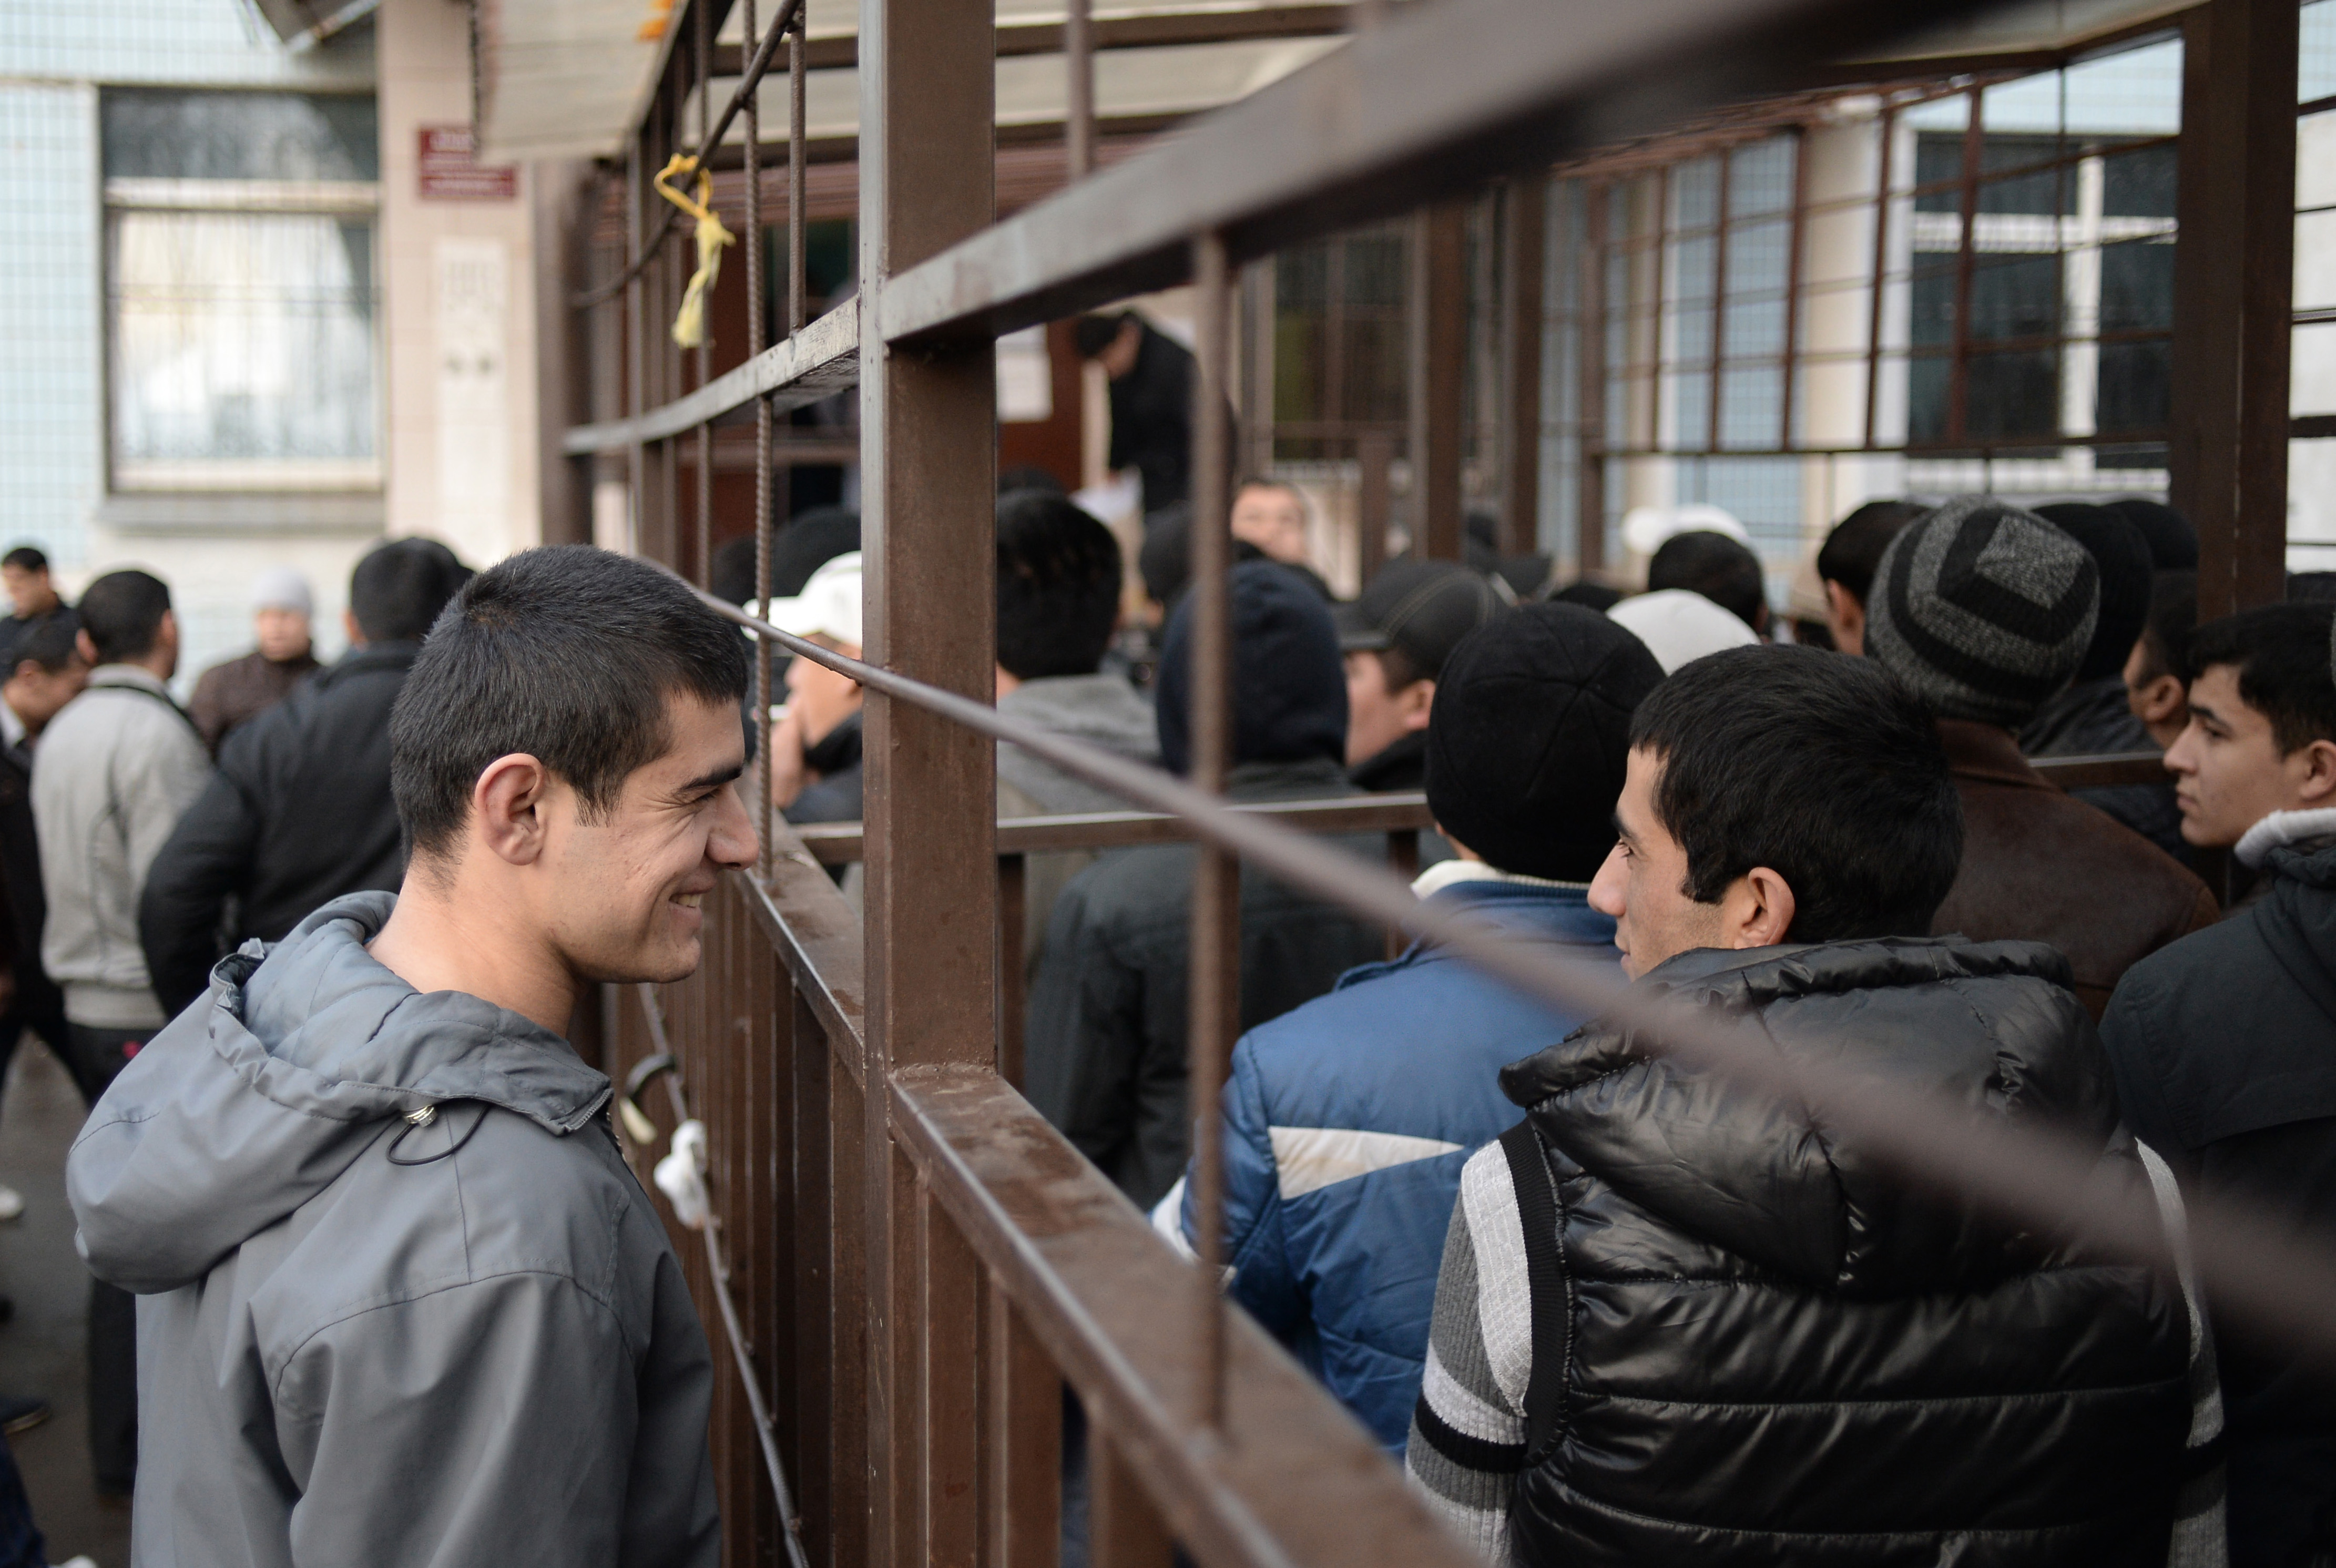 Сколько таджиков депортировали